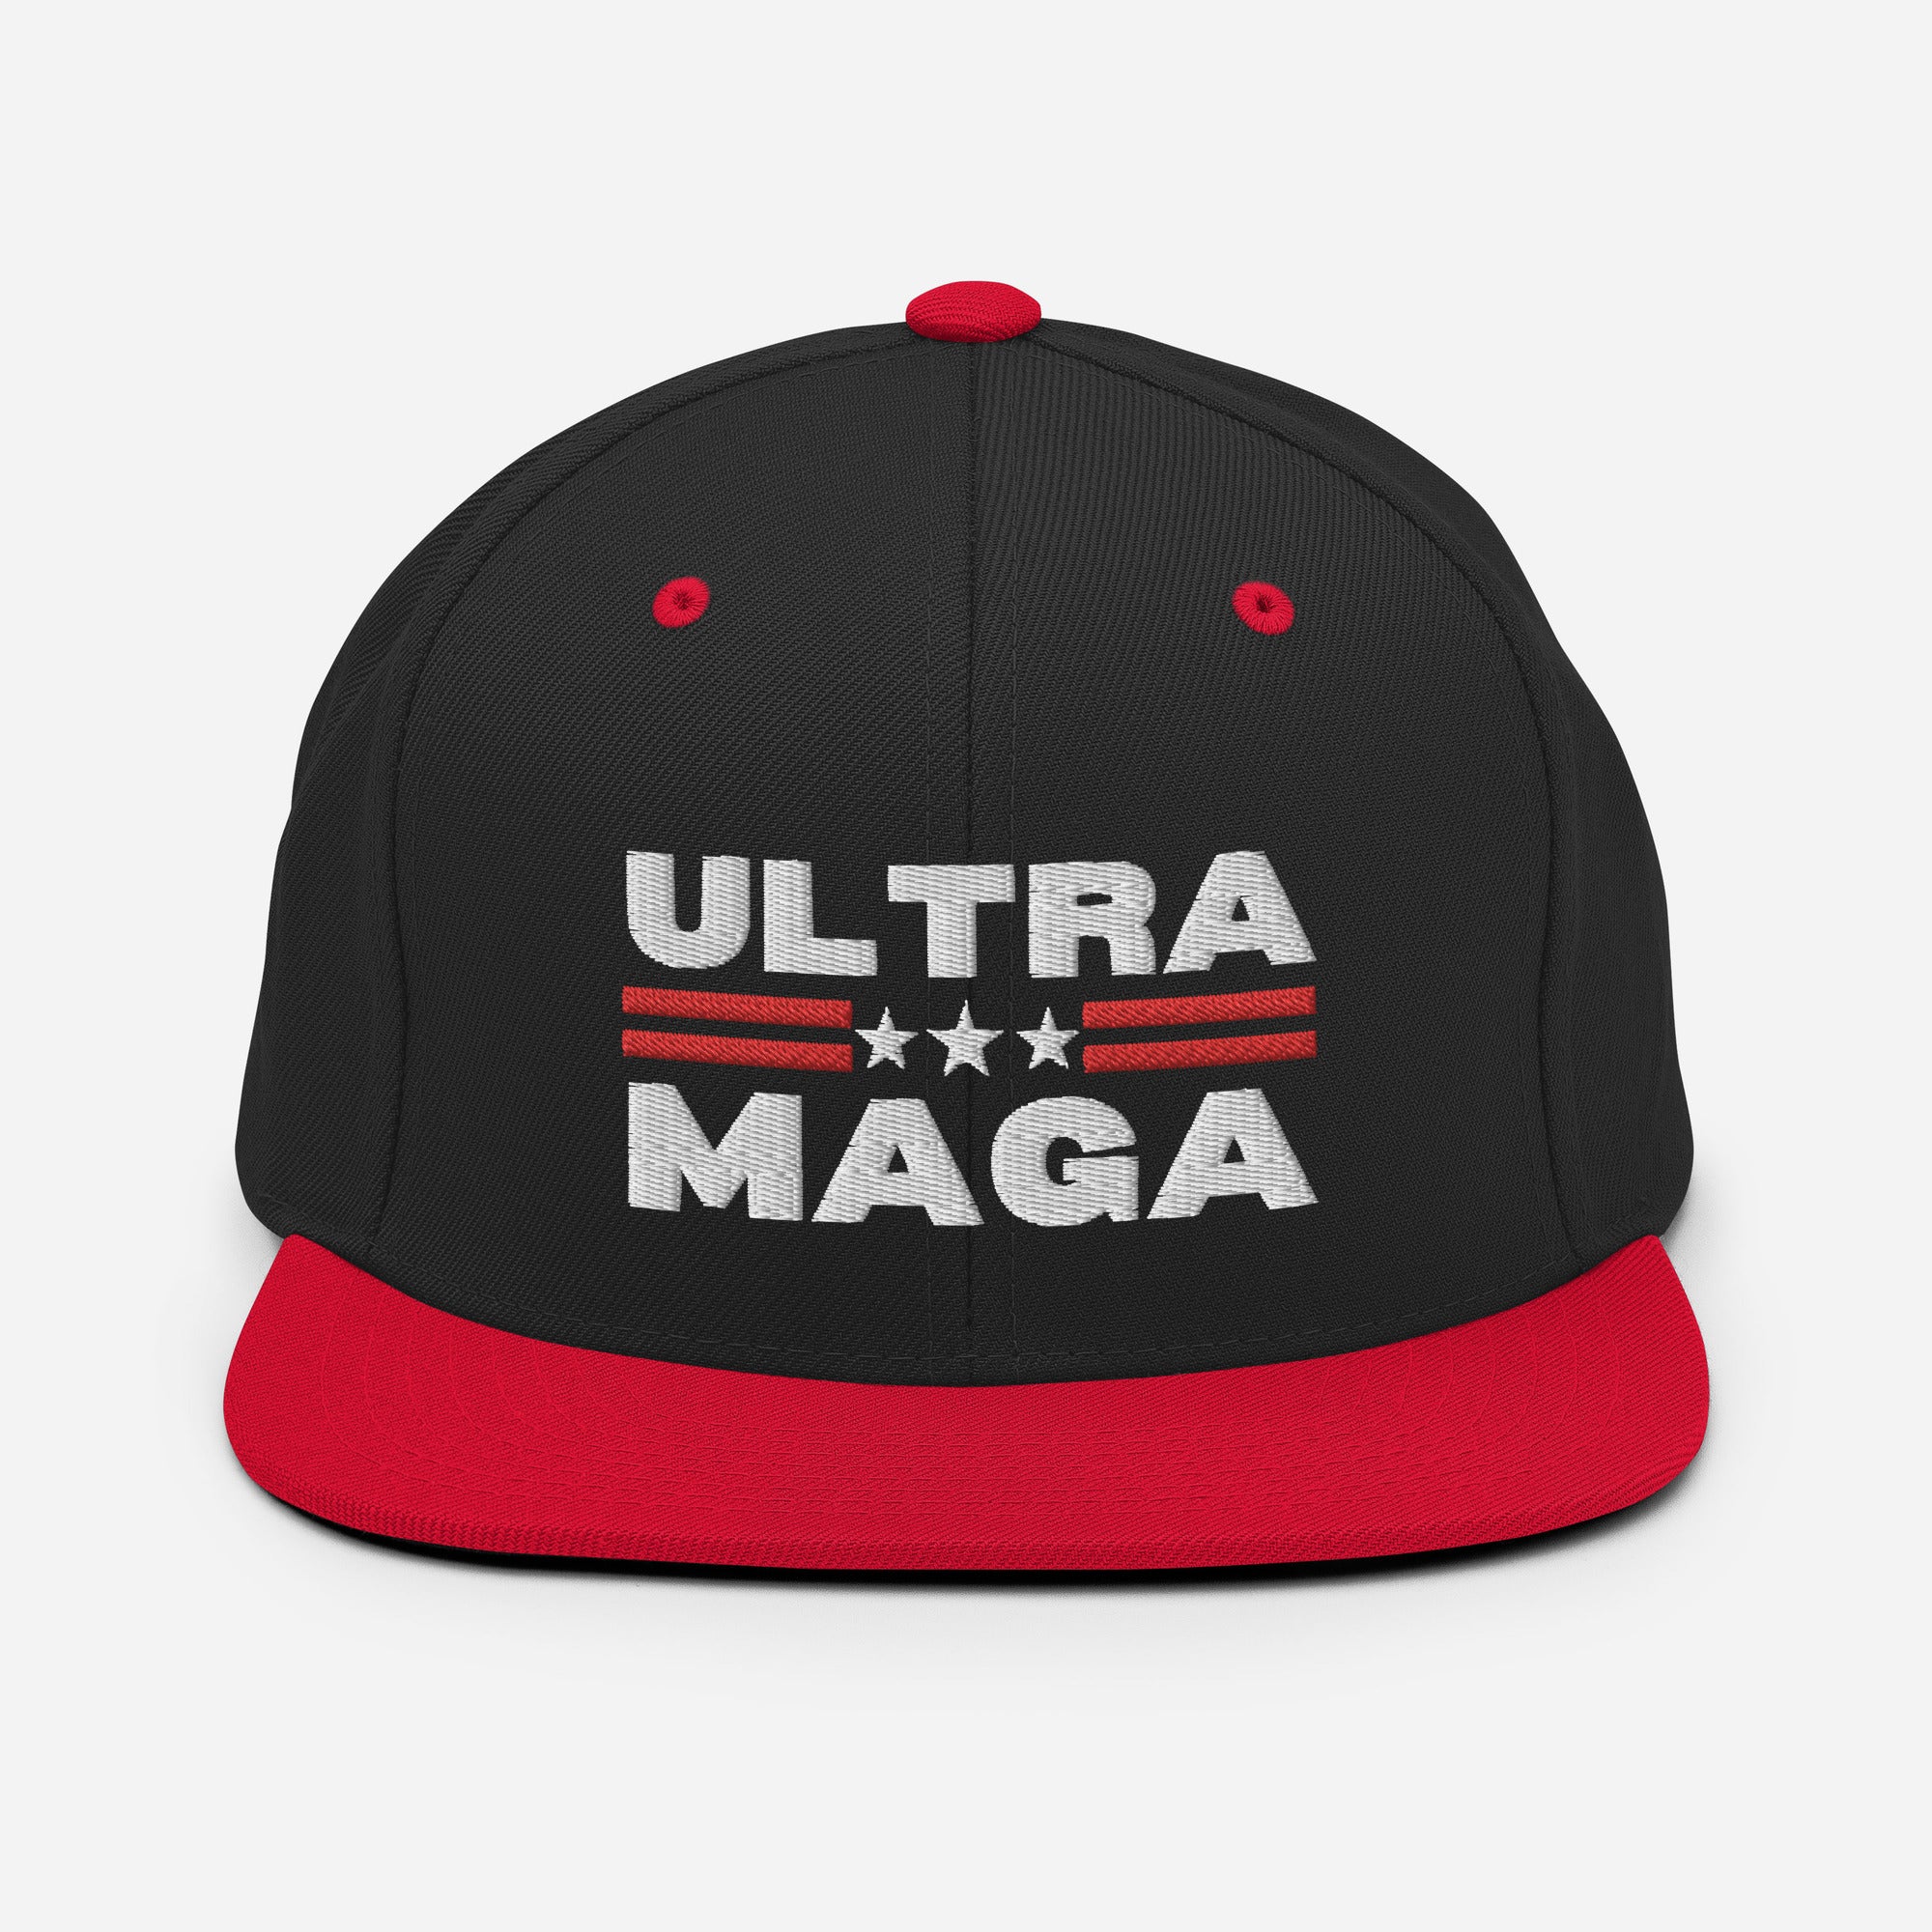 Sombrero Ultra MAGA, Sombrero Trump 2024, Regalos de papá republicano, Gorra Patriota Americana, Donald Trump 2024, Sombreros Conservadores, Sombrero Snapback FJB